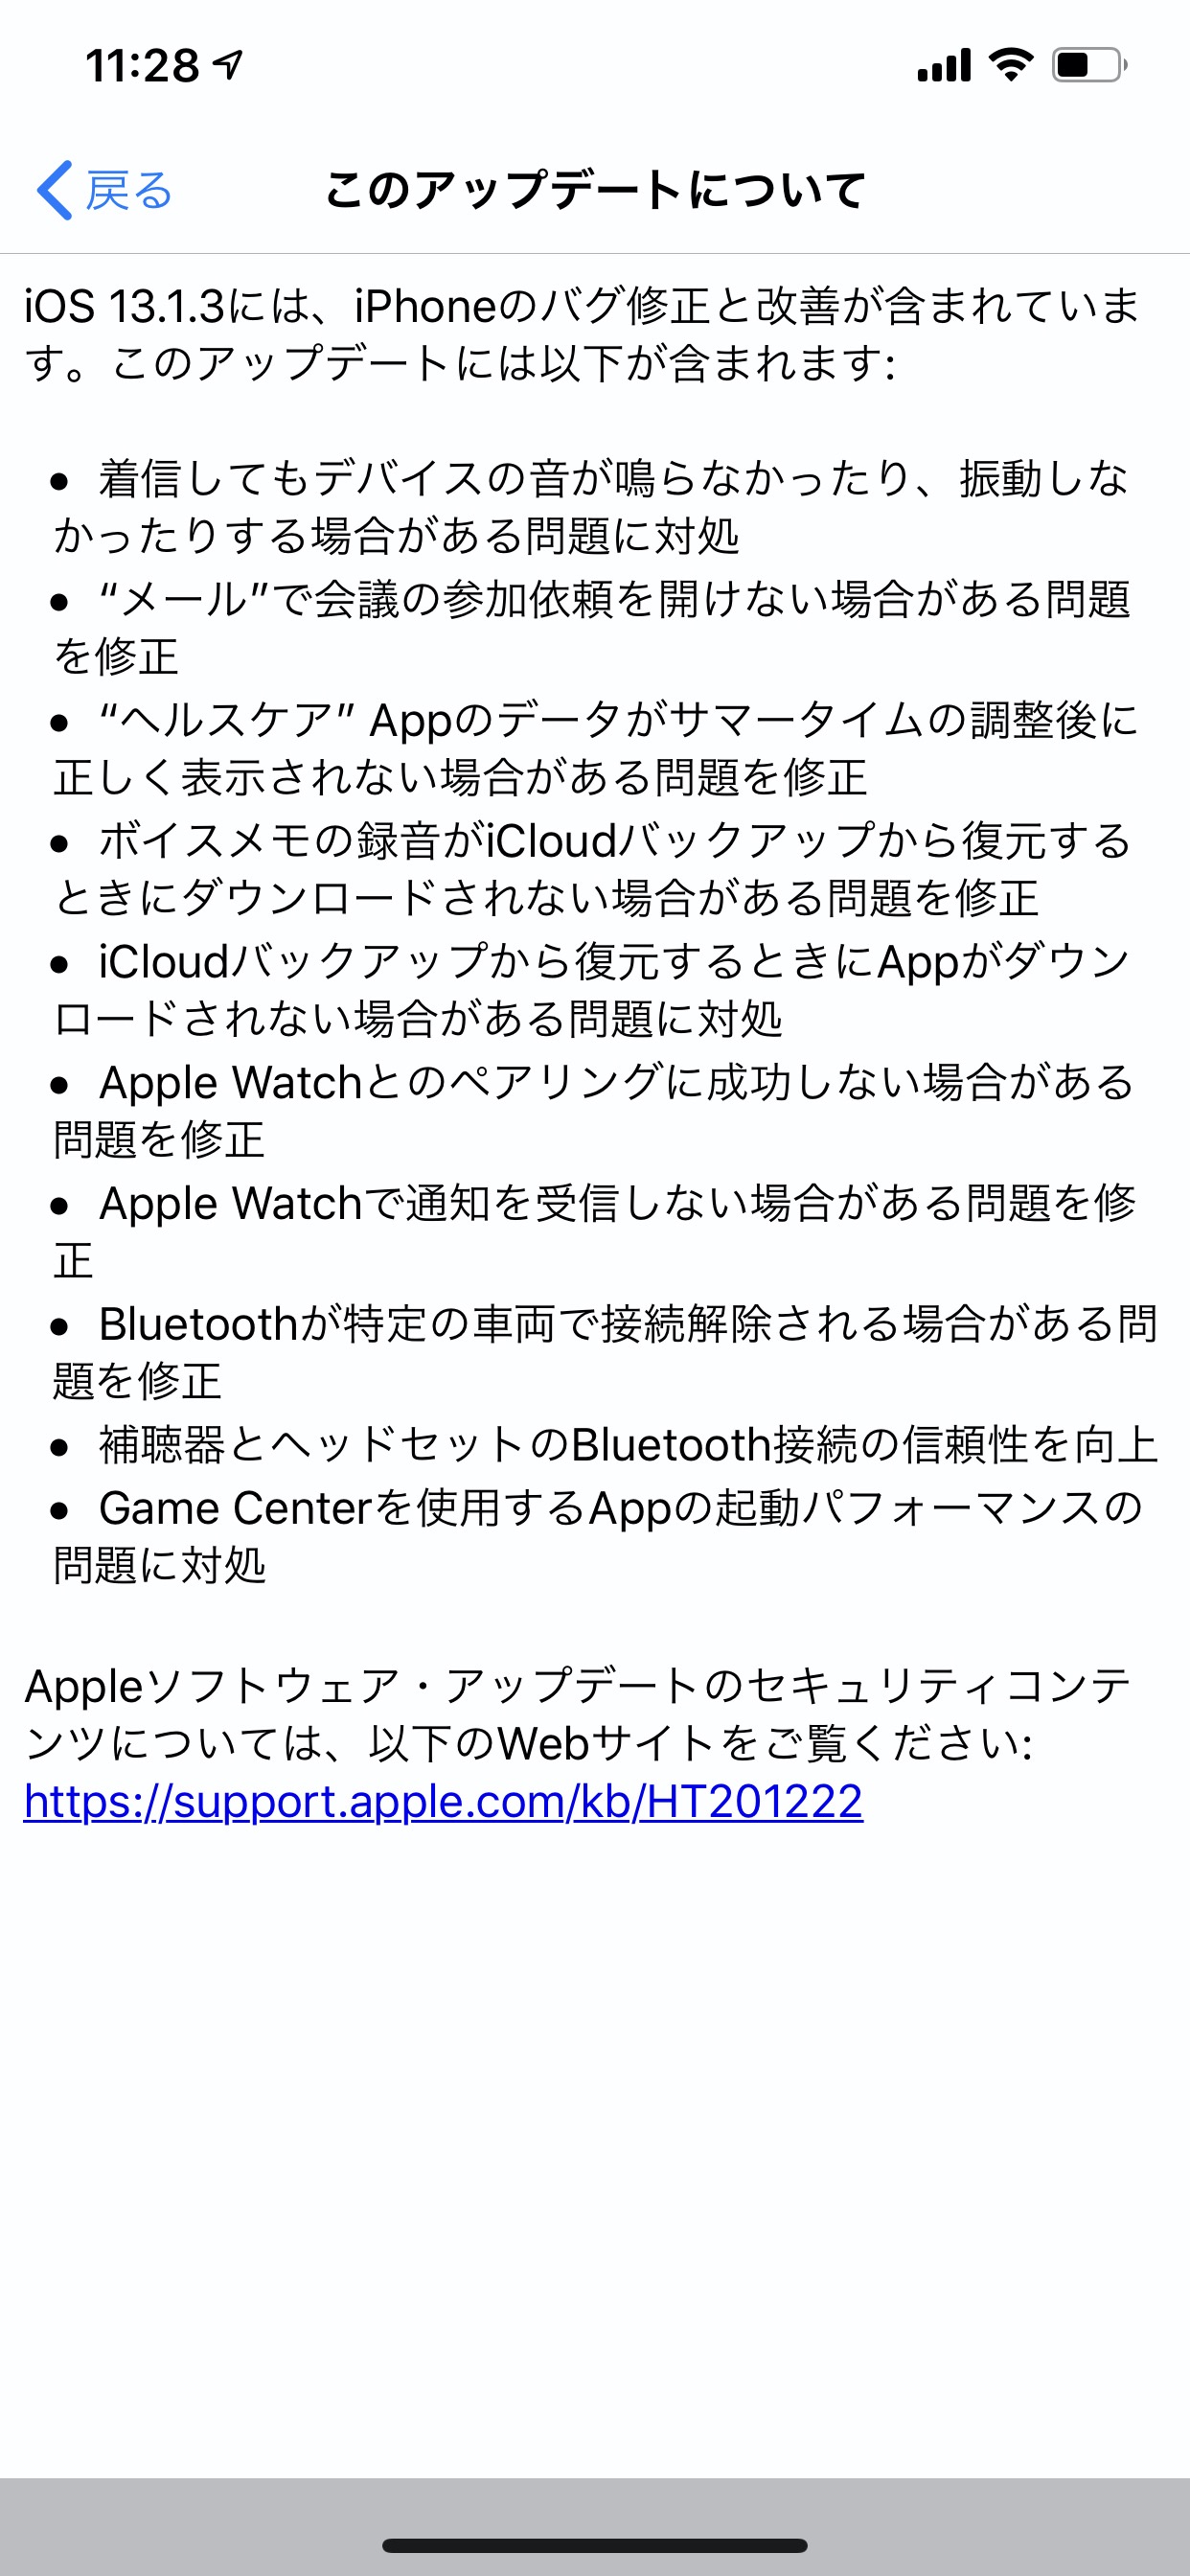 【iOS 13】バグ修正や改善が含まれる「iOS 13.1.3 ソフトウェアアップデート」リリース